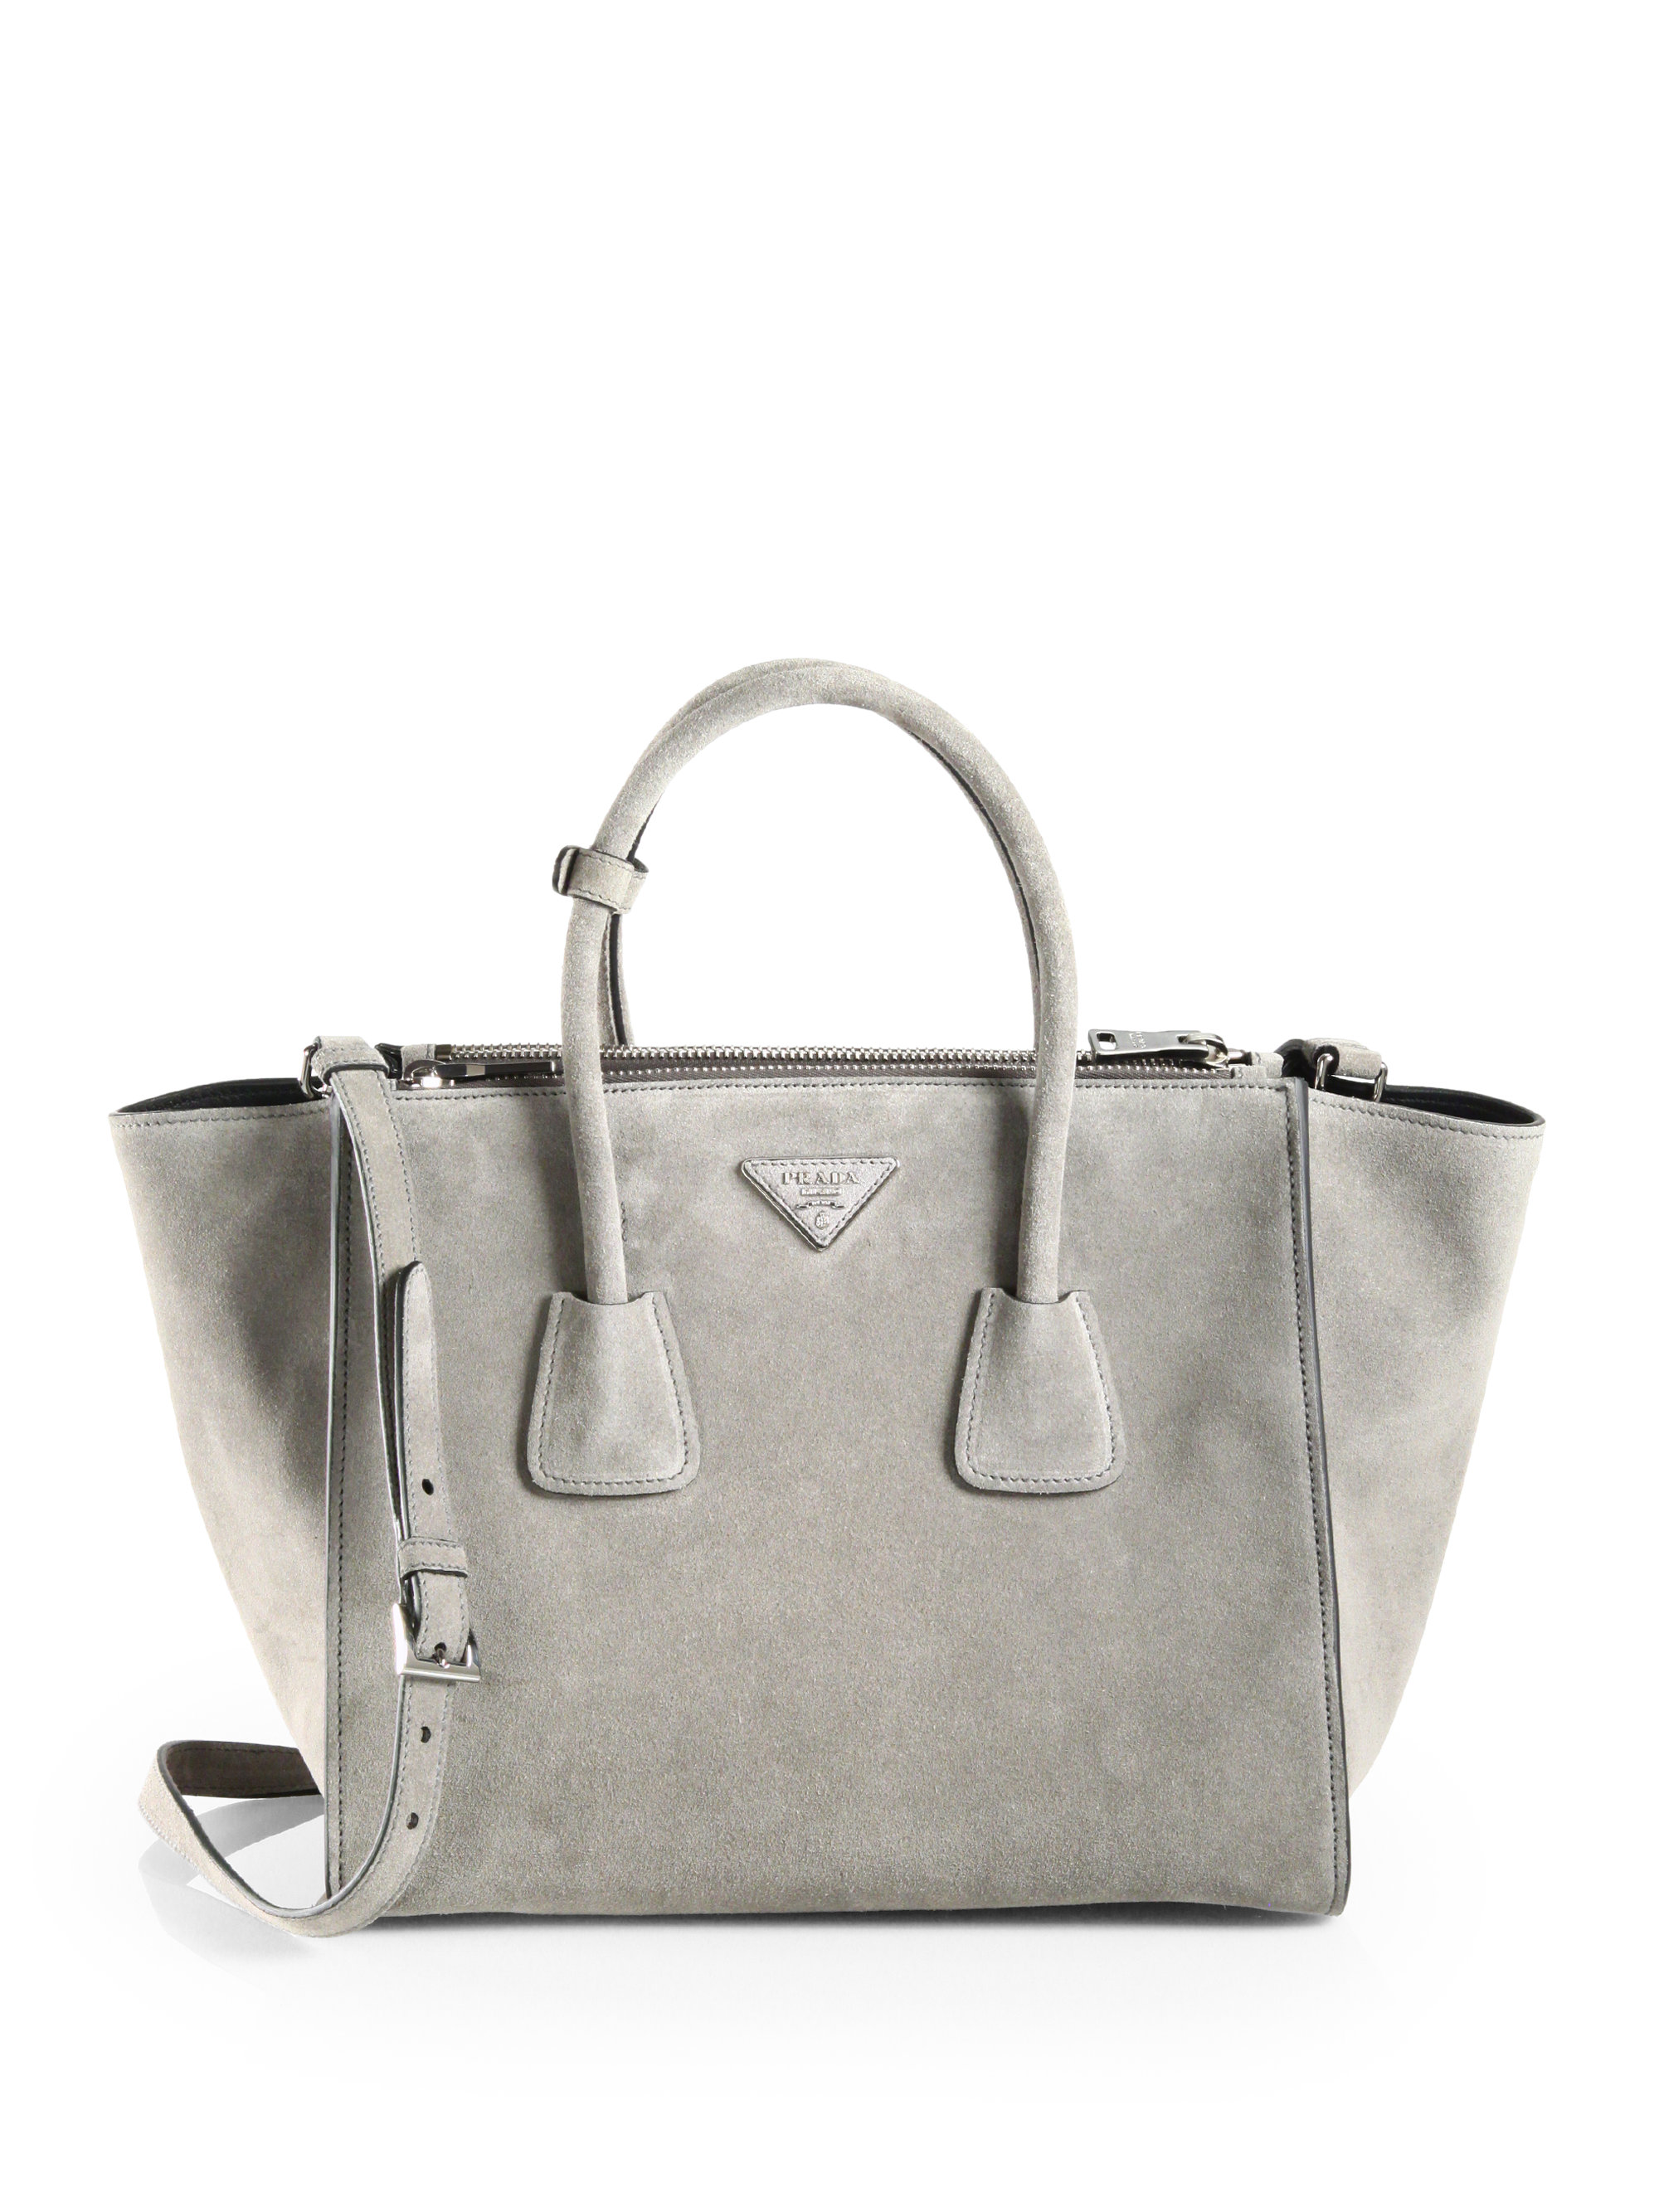 popular purse - Prada Suede Twin Pocket Tote in Gray (ACCIAIO-GREY) | Lyst